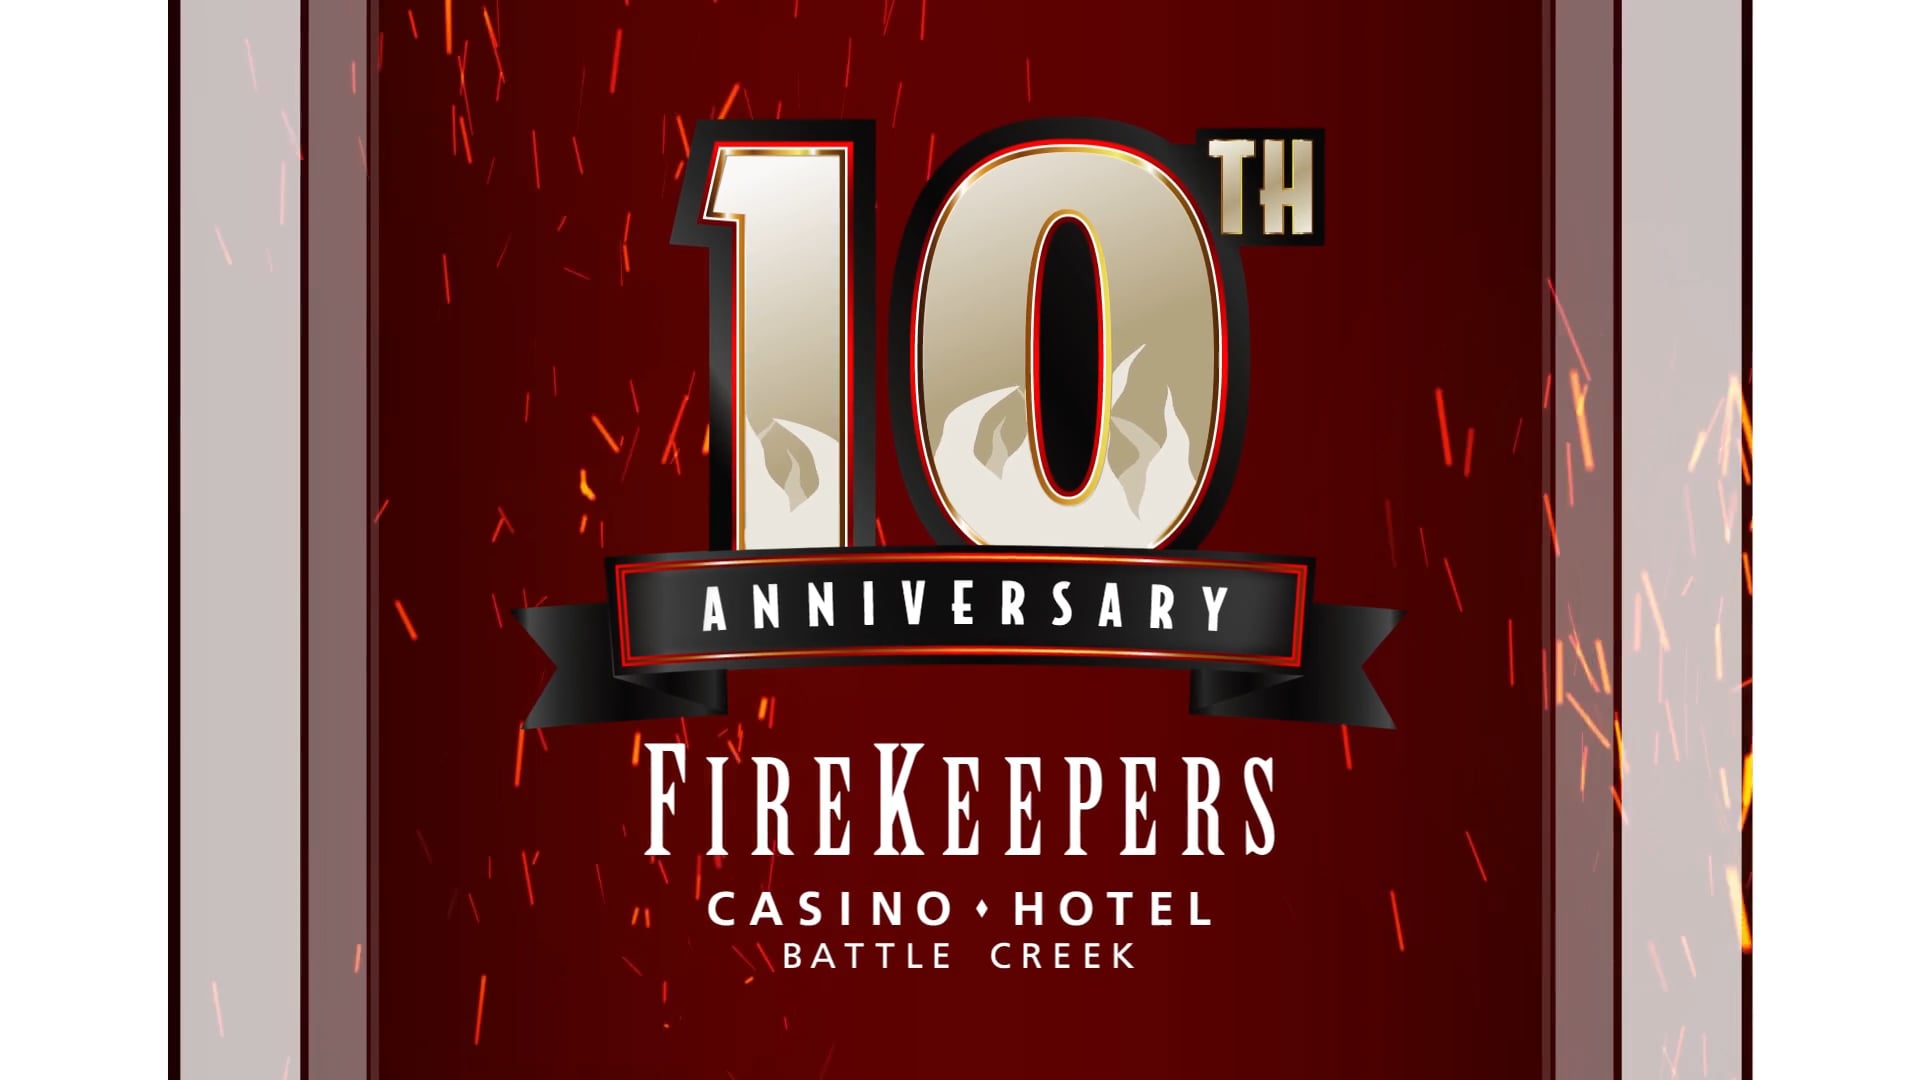 Firekeepers Casino Hotel 10th Anniversary